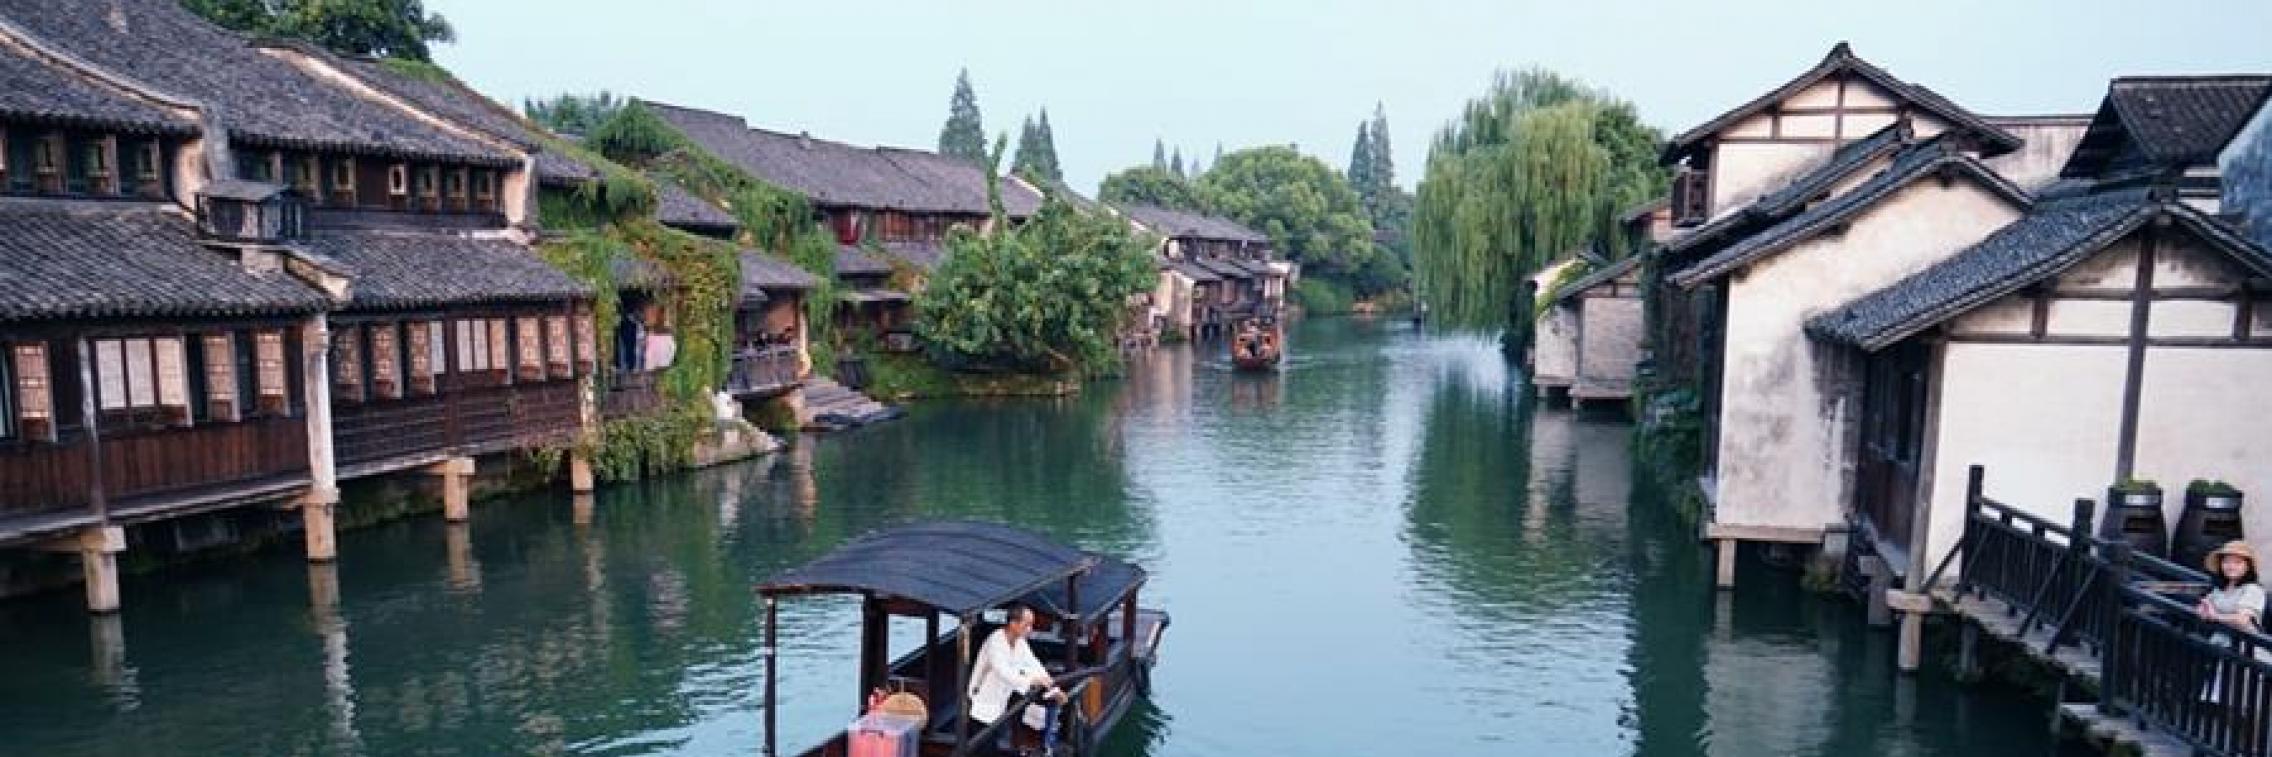 Wuzhen, Zhejiang Province